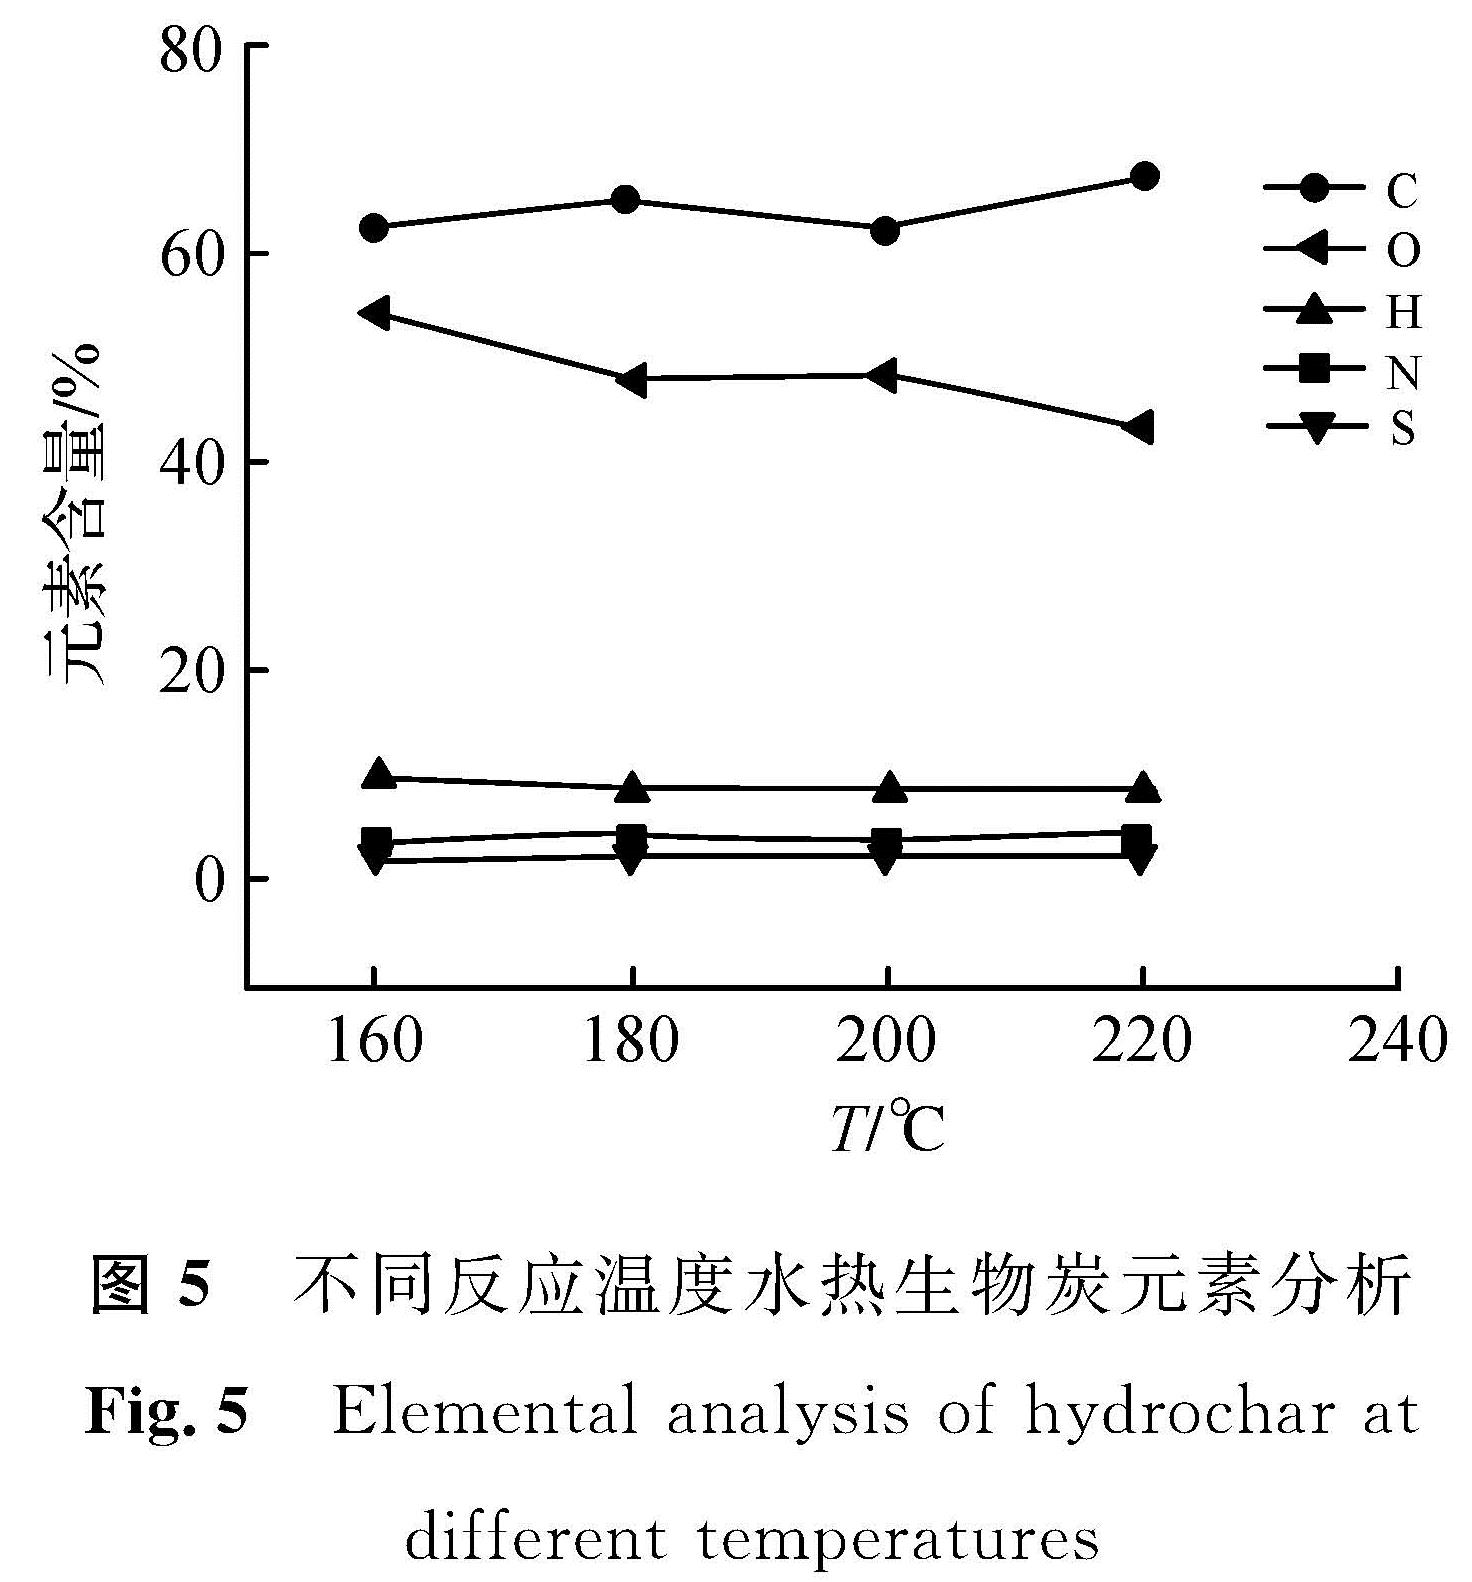 图5 不同反应温度水热生物炭元素分析<br/>Fig.5 Elemental analysis of hydrochar at different temperatures